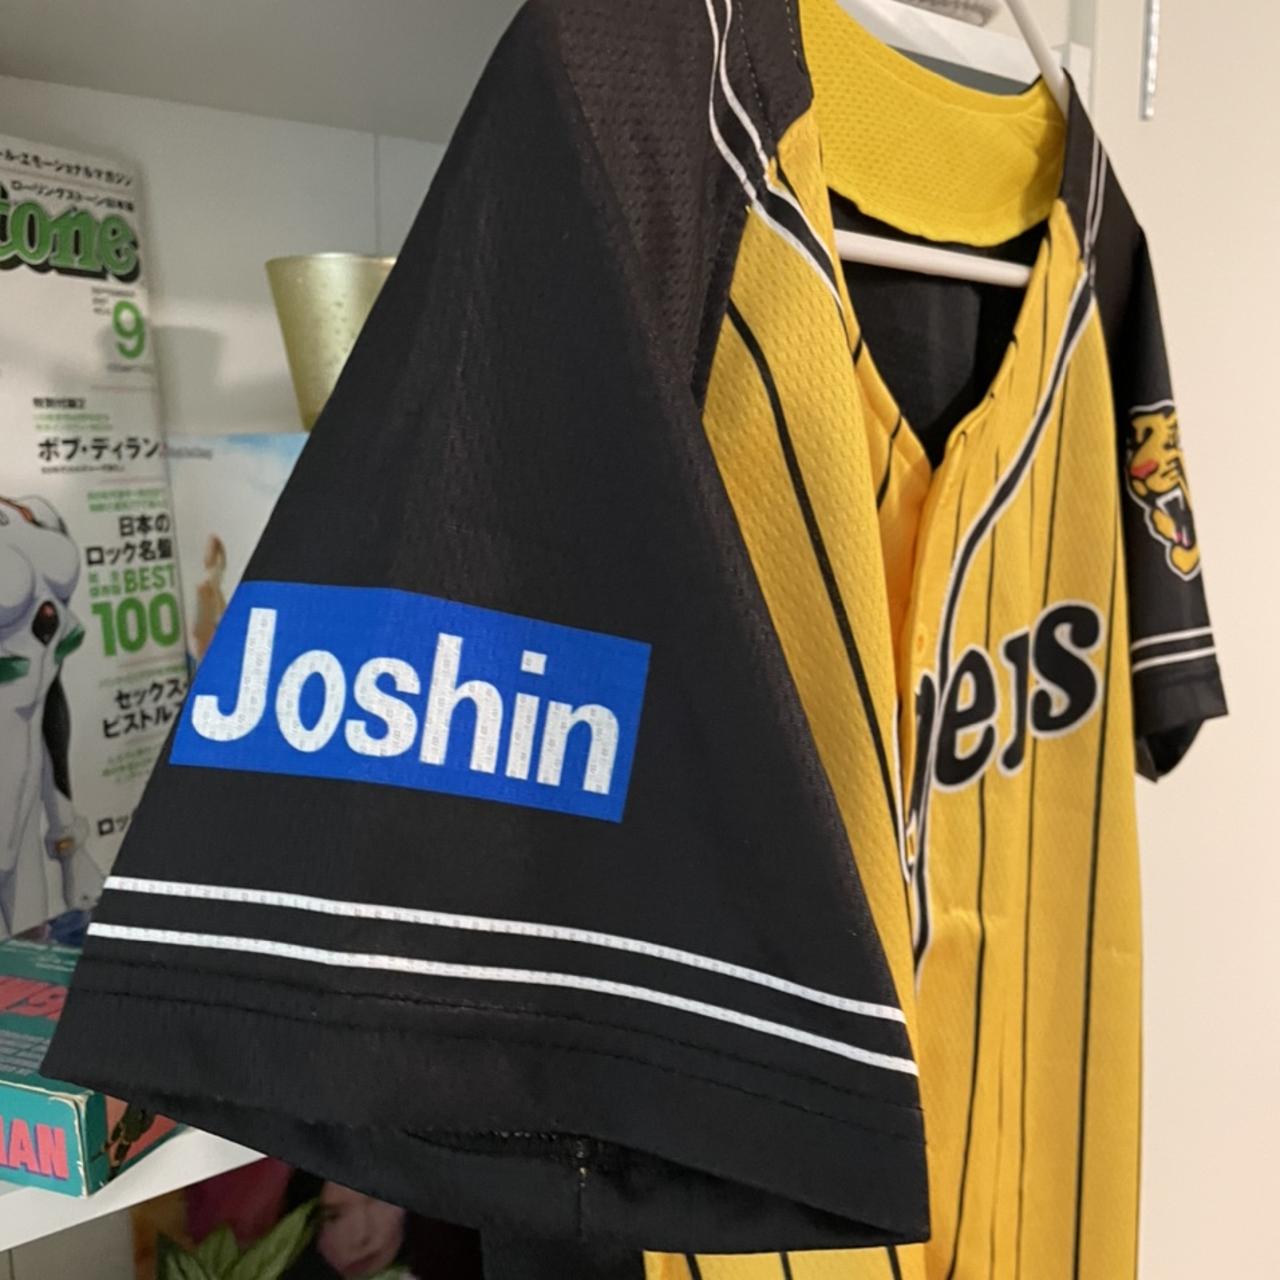 Joshin Hanshin Tigers Japanese Baseball Jersey 